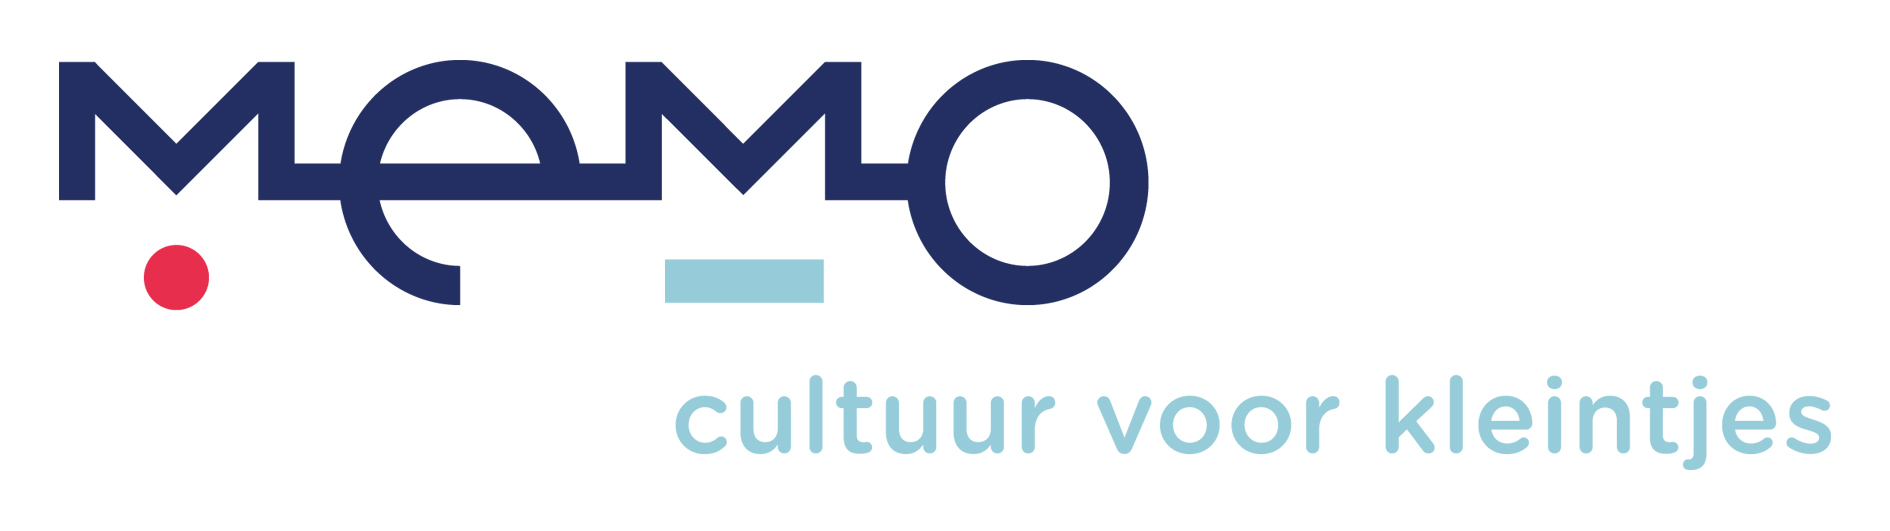 Logo Memo cultuur voor kleintjes